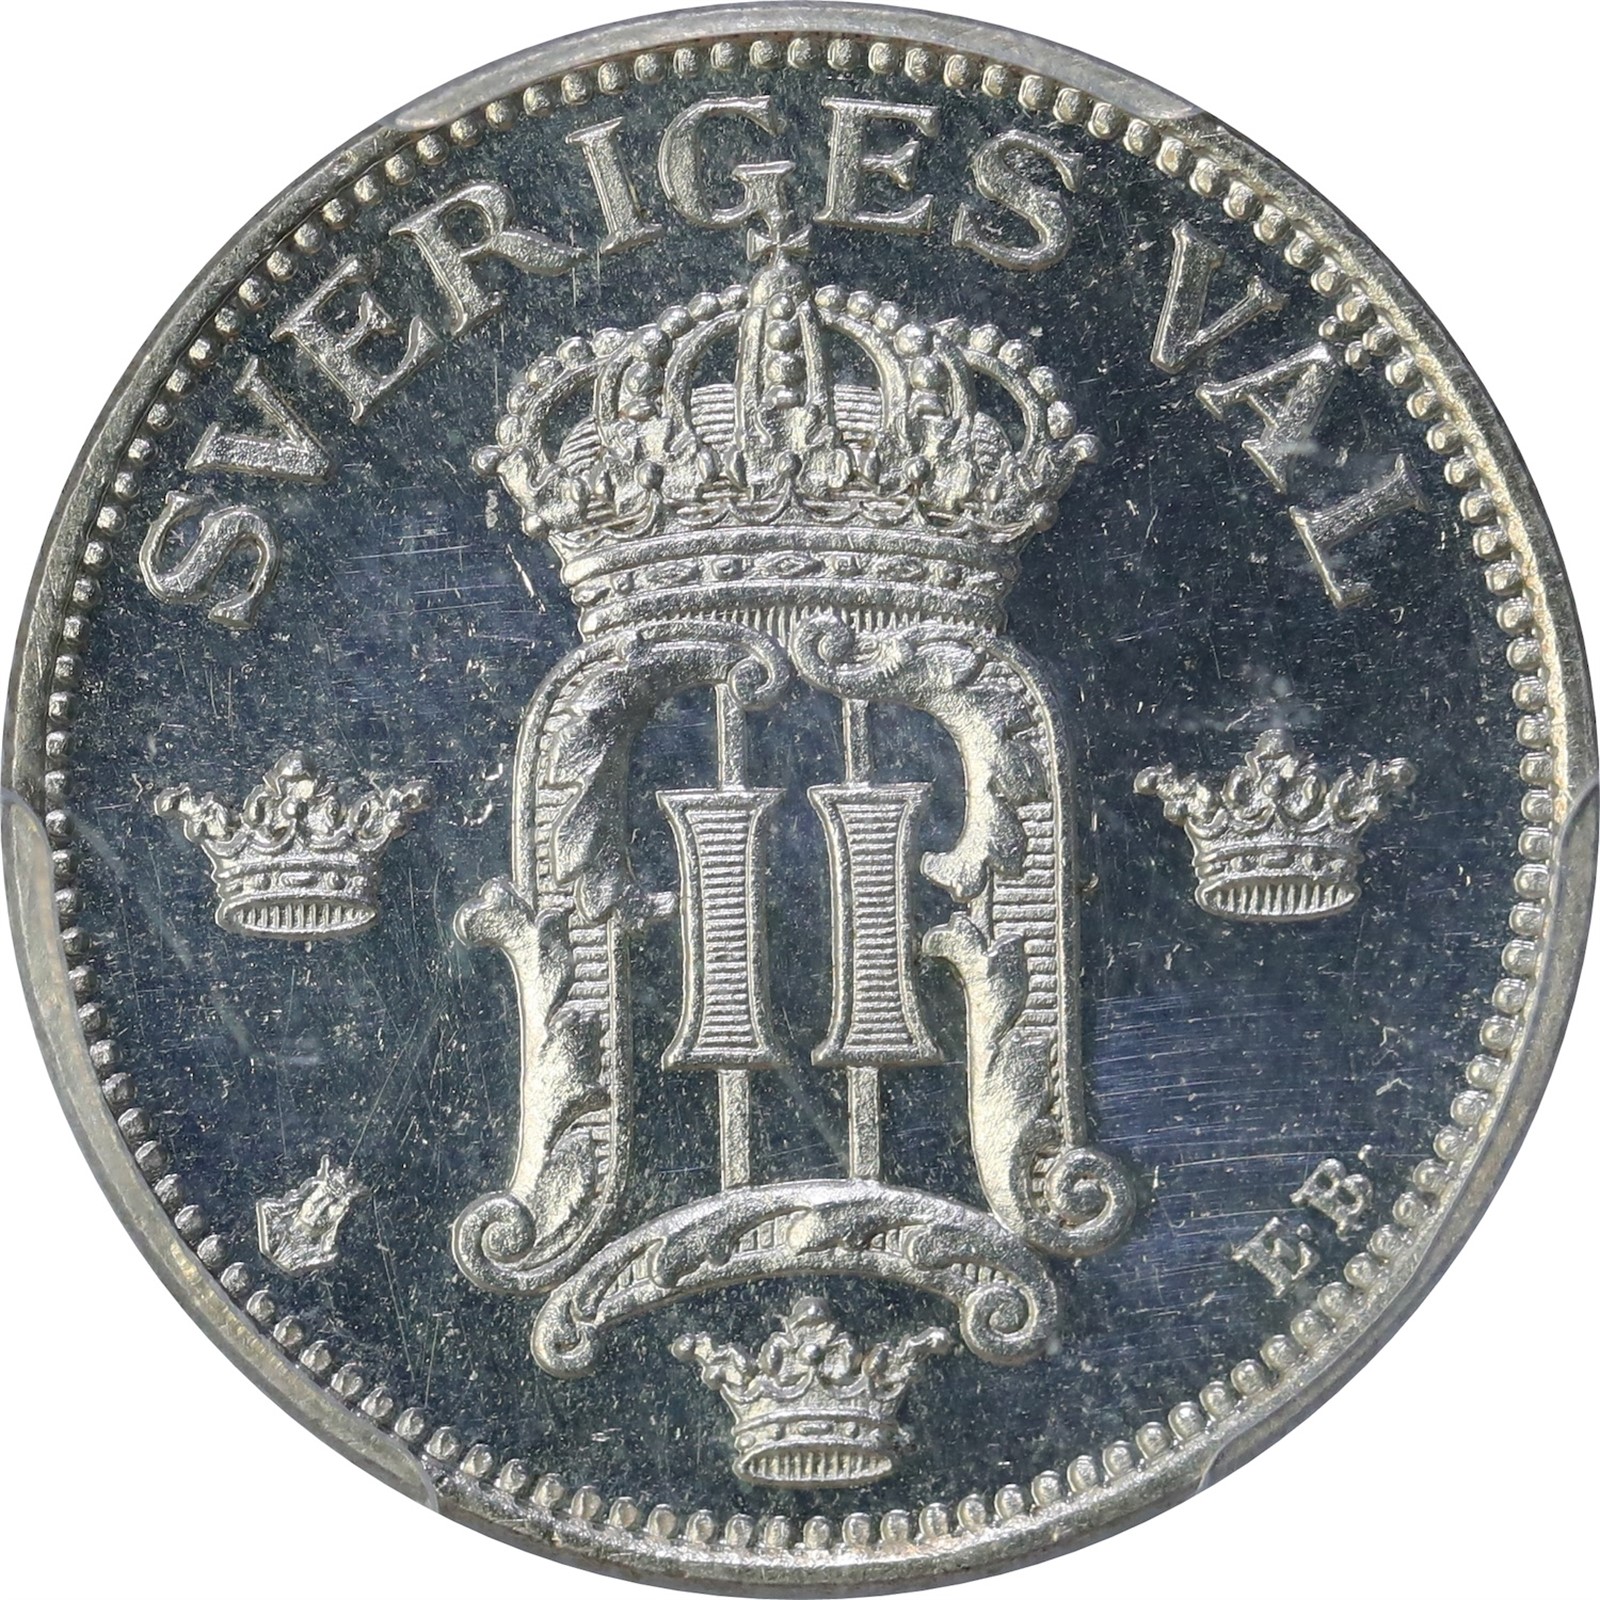 SWEDEN. Oscar II. 50 Öre 1906 PCGS PR64DCAM